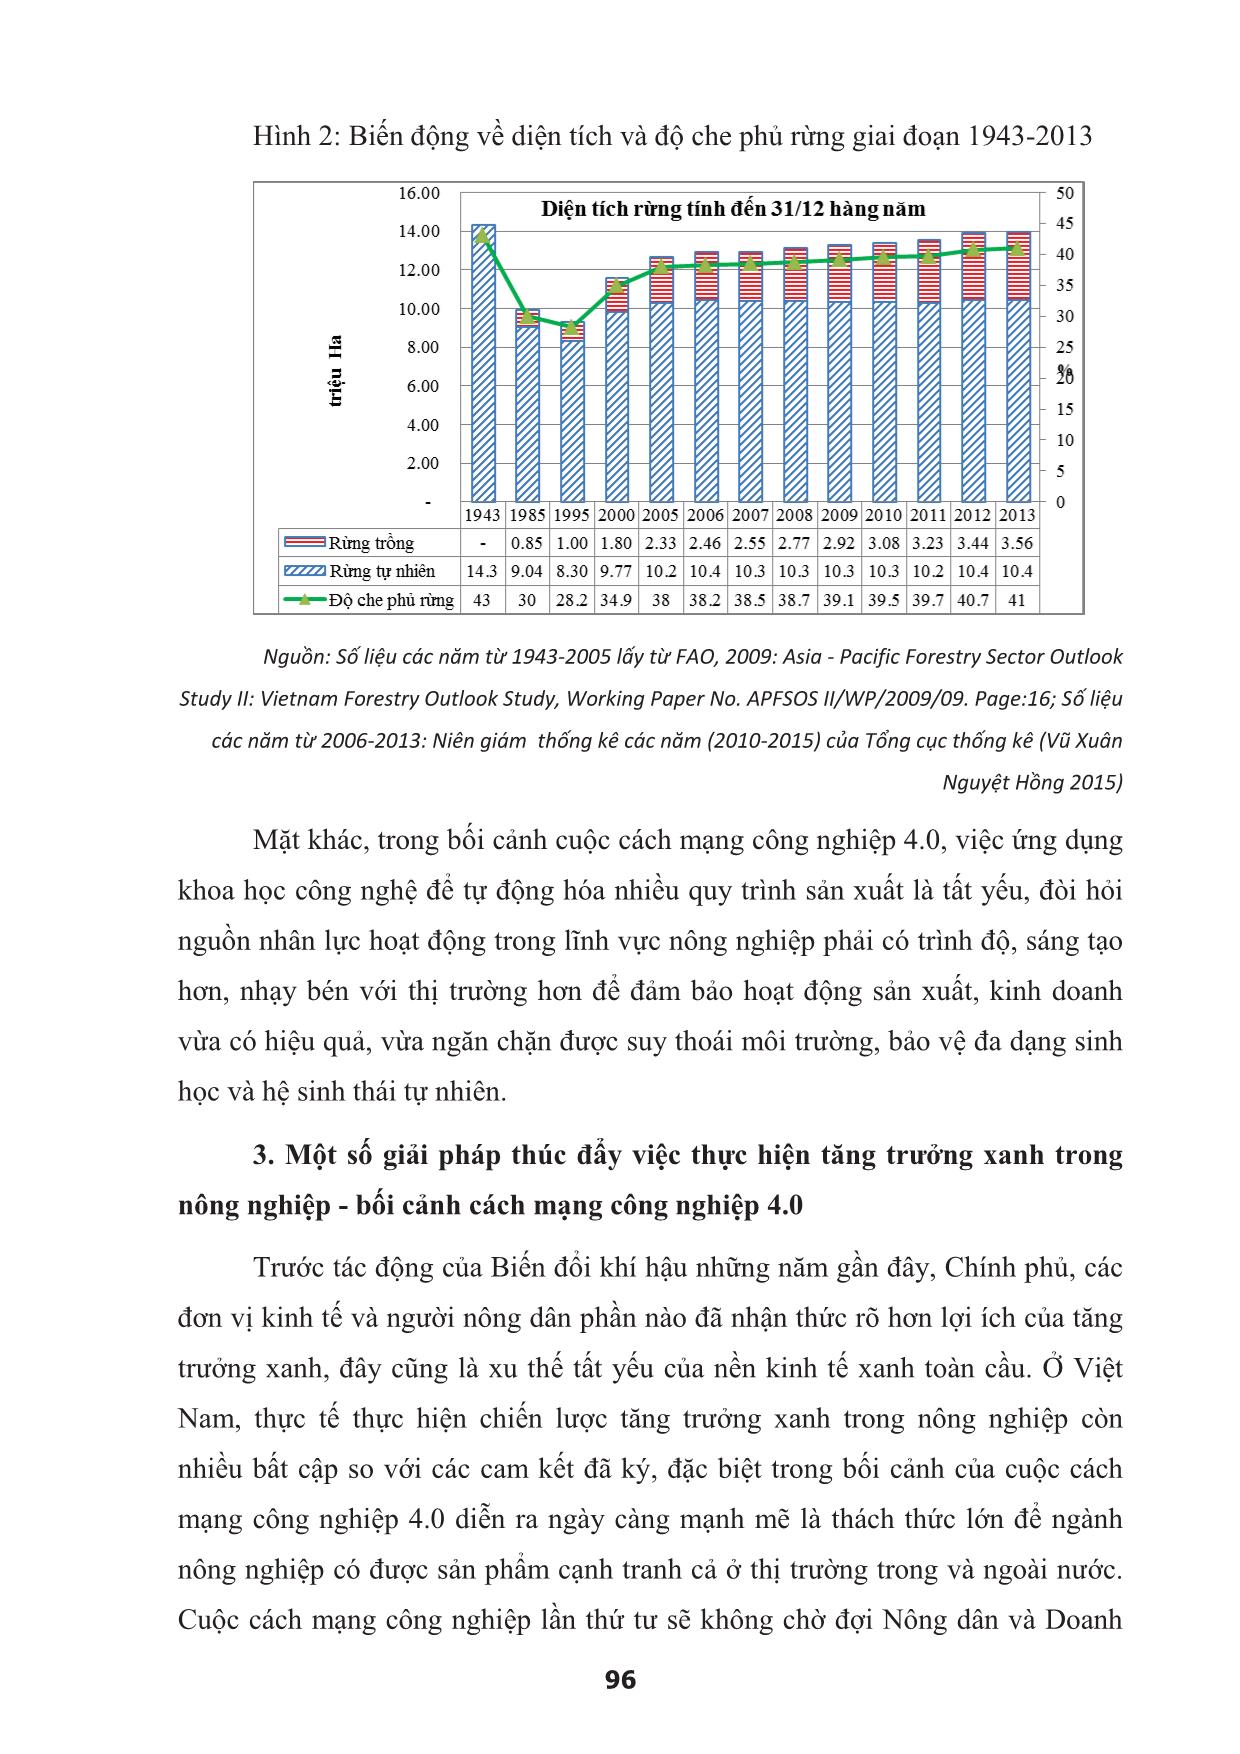 Tăng trưởng xanh trong nông nghiệp Việt Nam - Bối cảnh cách mạng công nghiệp 4.0 trang 8